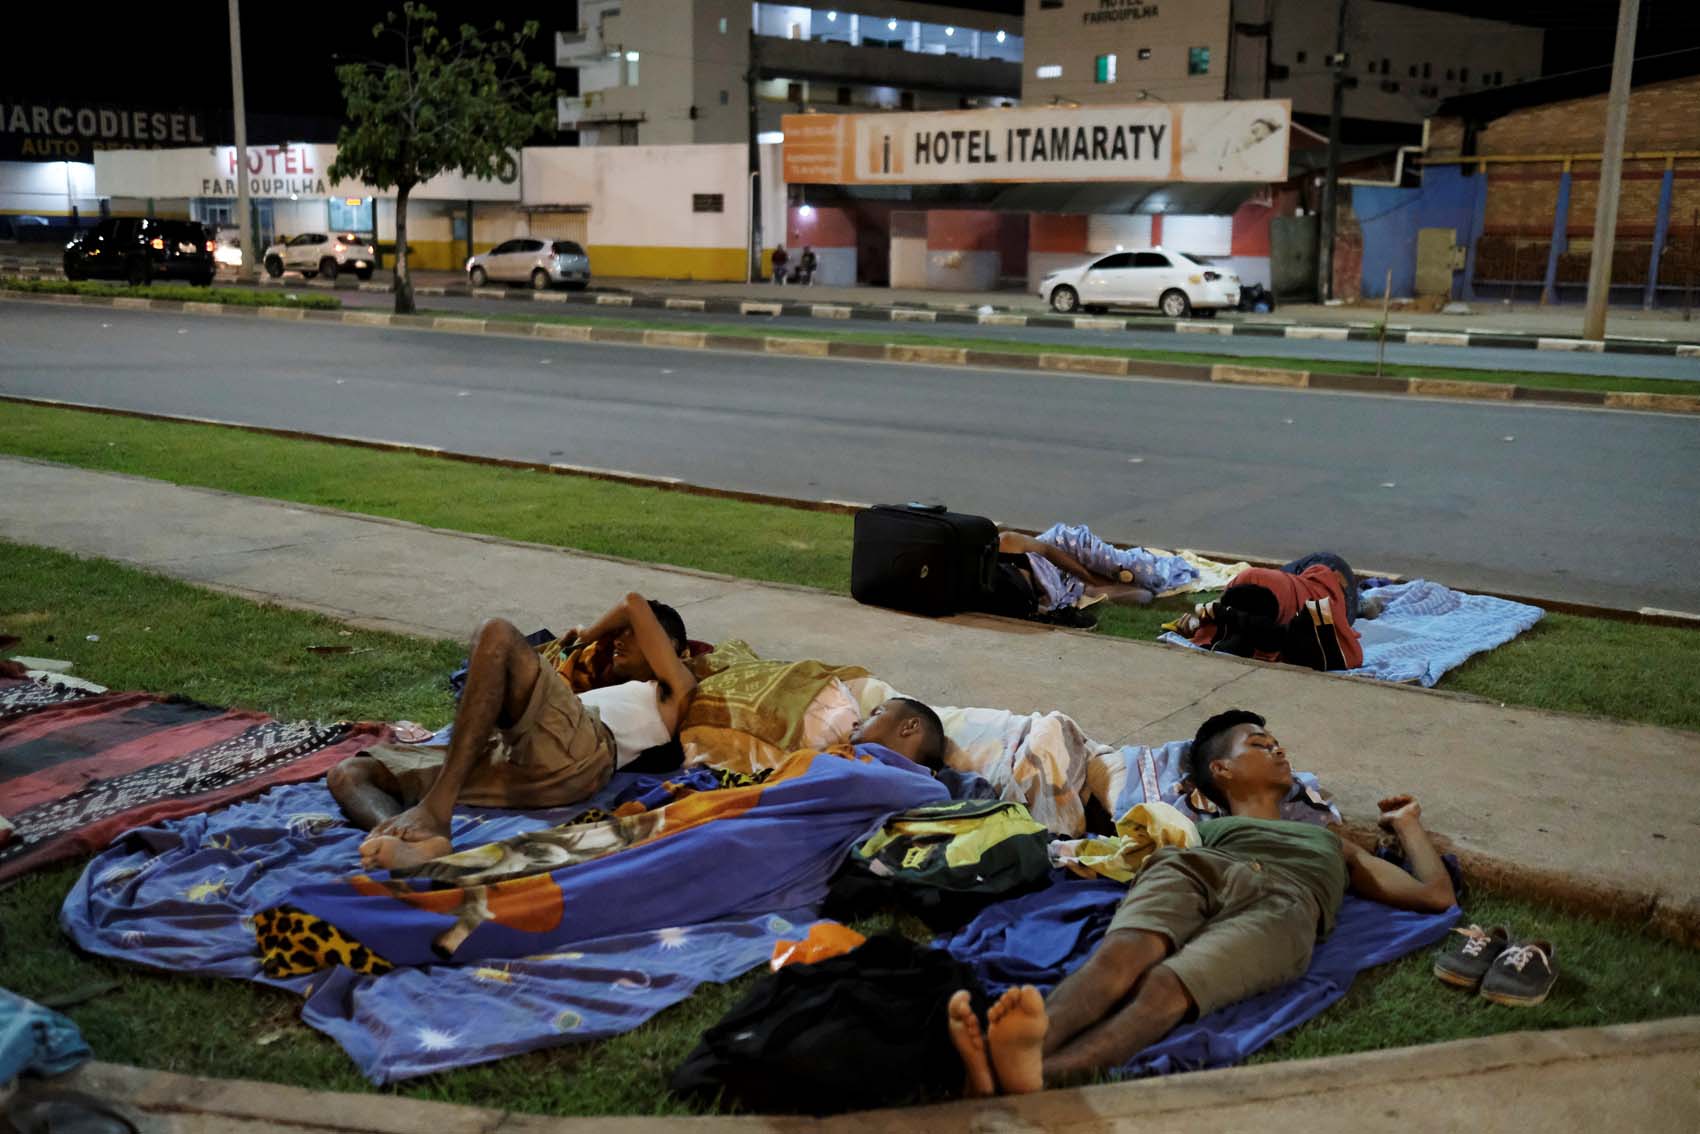 Brasil brinda campamentos a unos 500 venezolanos que vivían en las calles